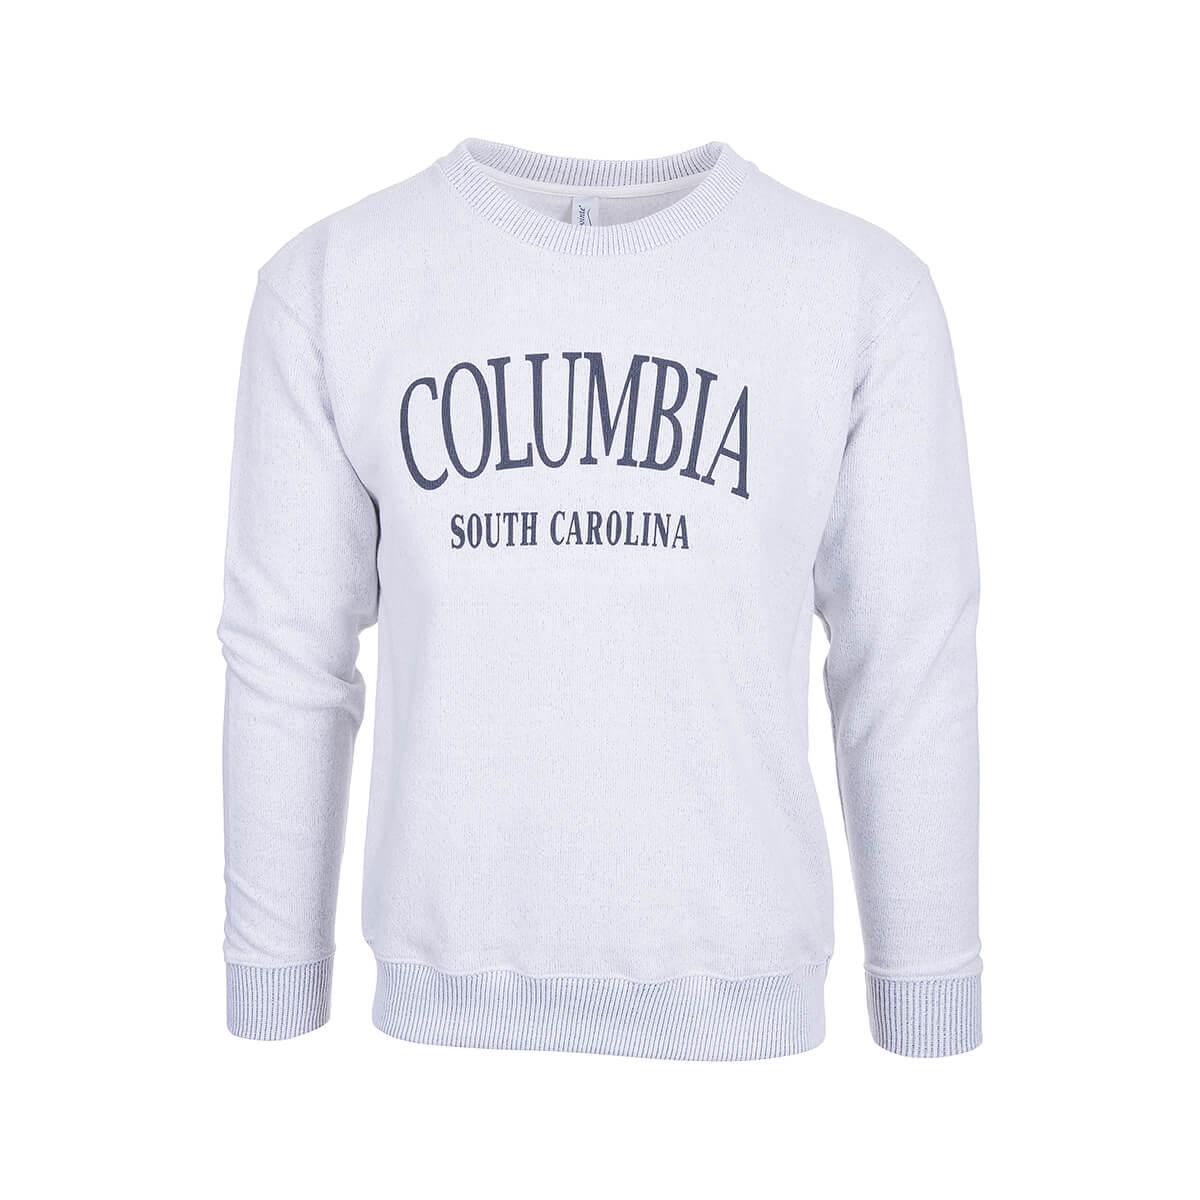  Columbia Nantucket Crew Neck Long Sleeve Sweatshirt